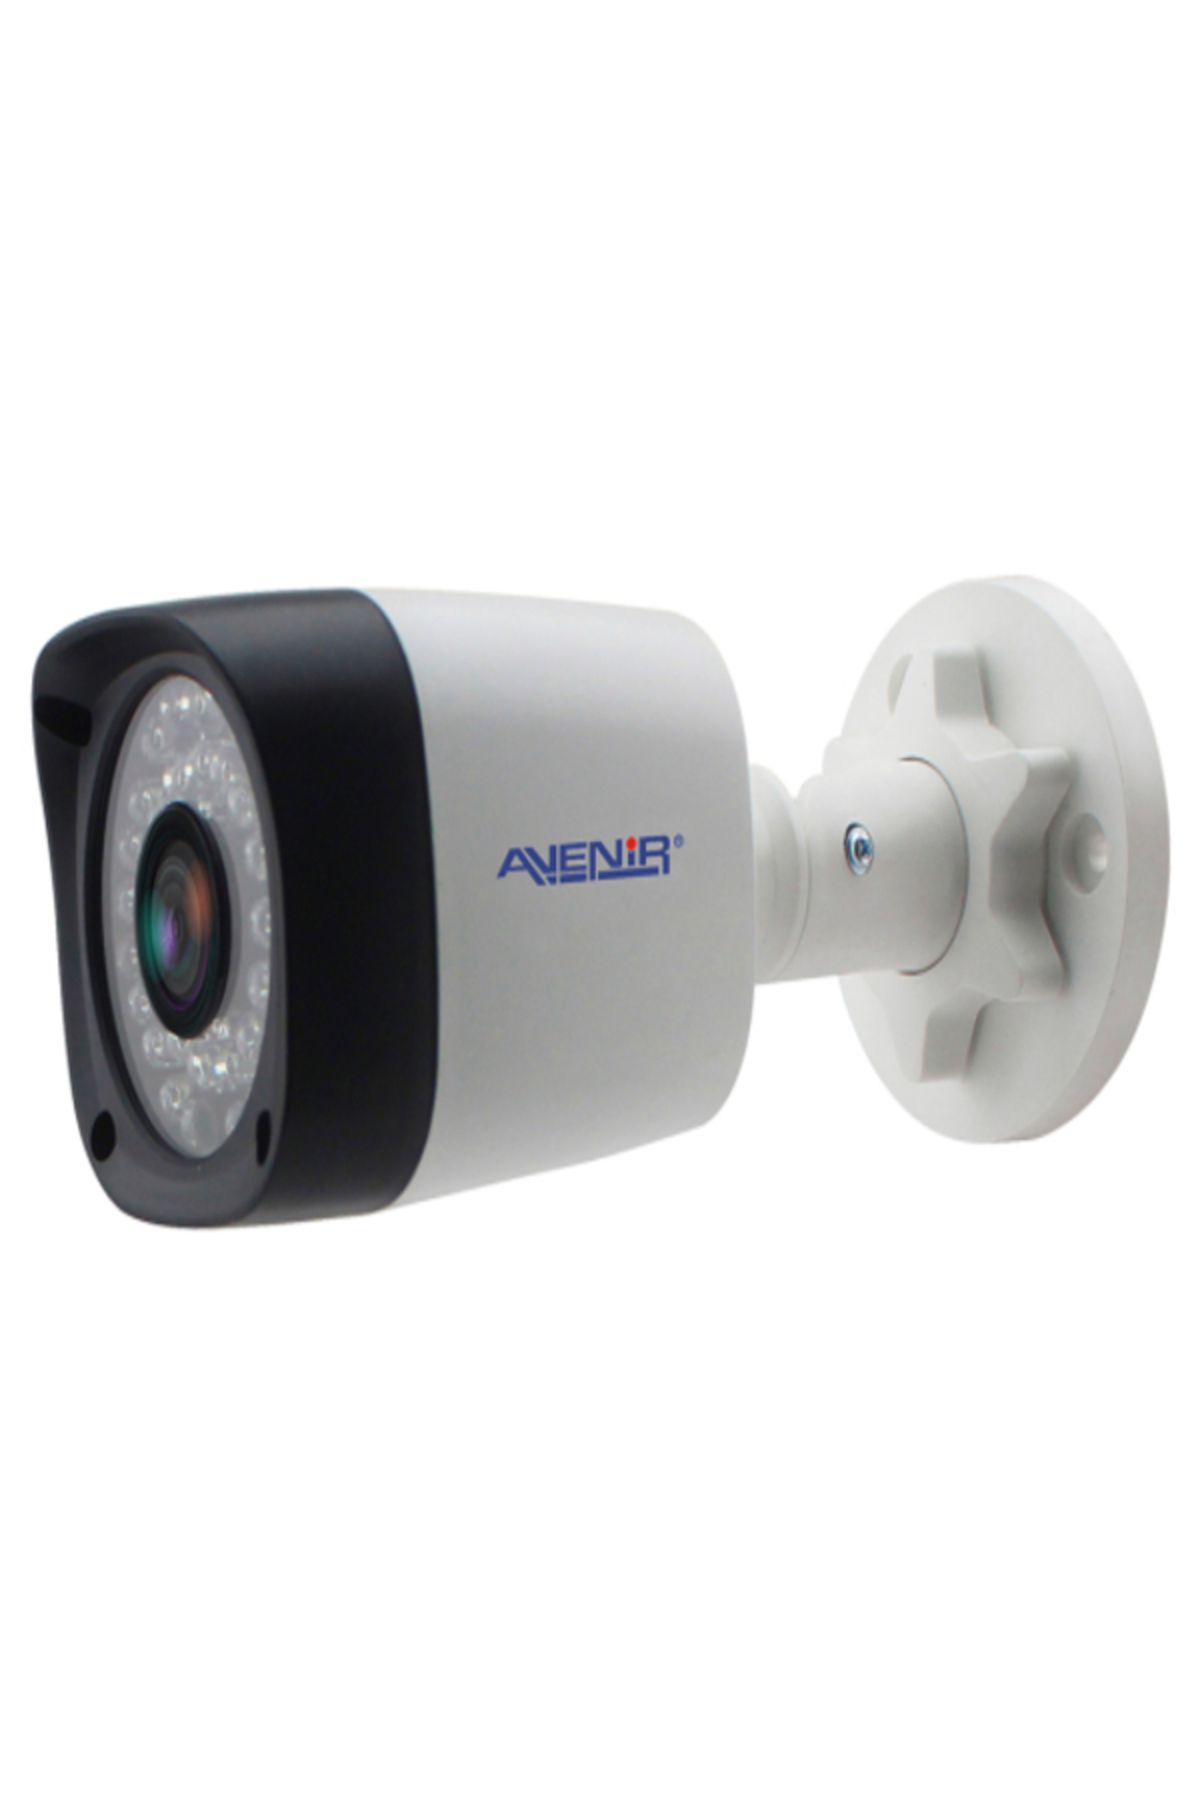 Avenir AV-BF236 2mp gece görüşlü avenir kamera